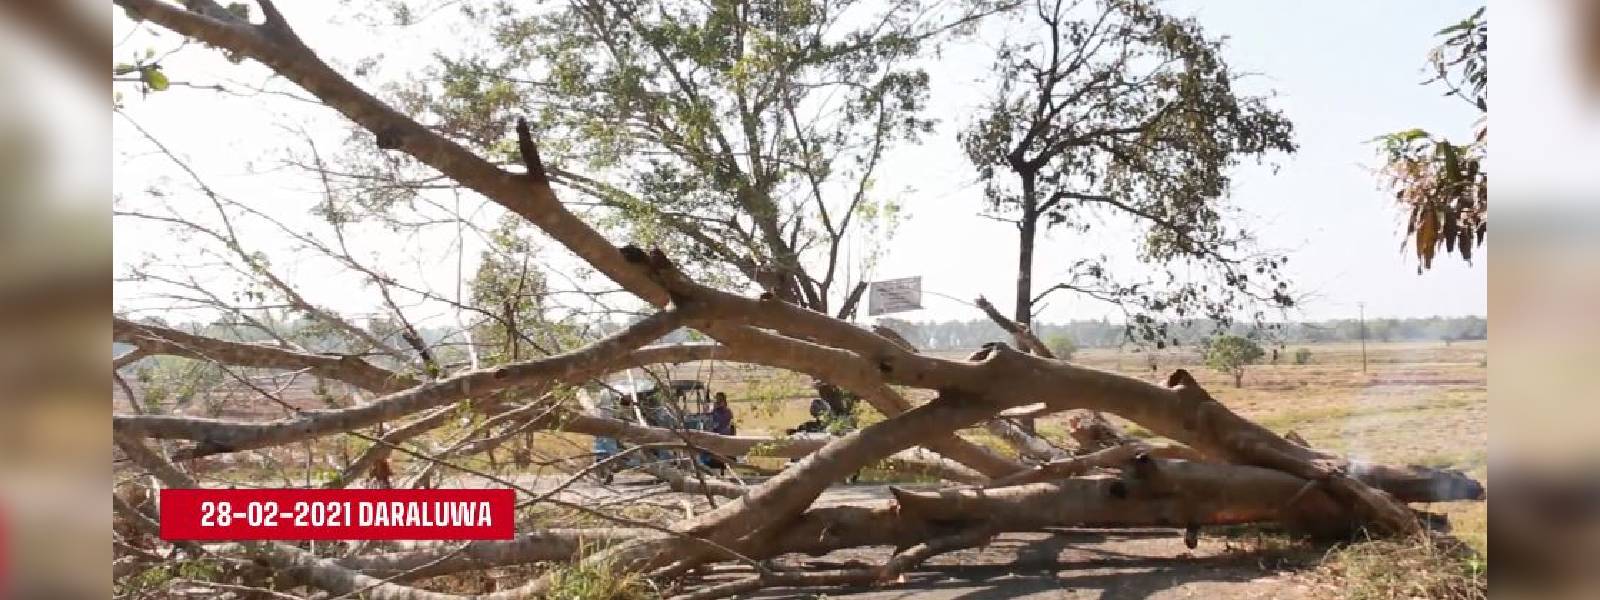 Nuga tree in Daraluwa set ablaze